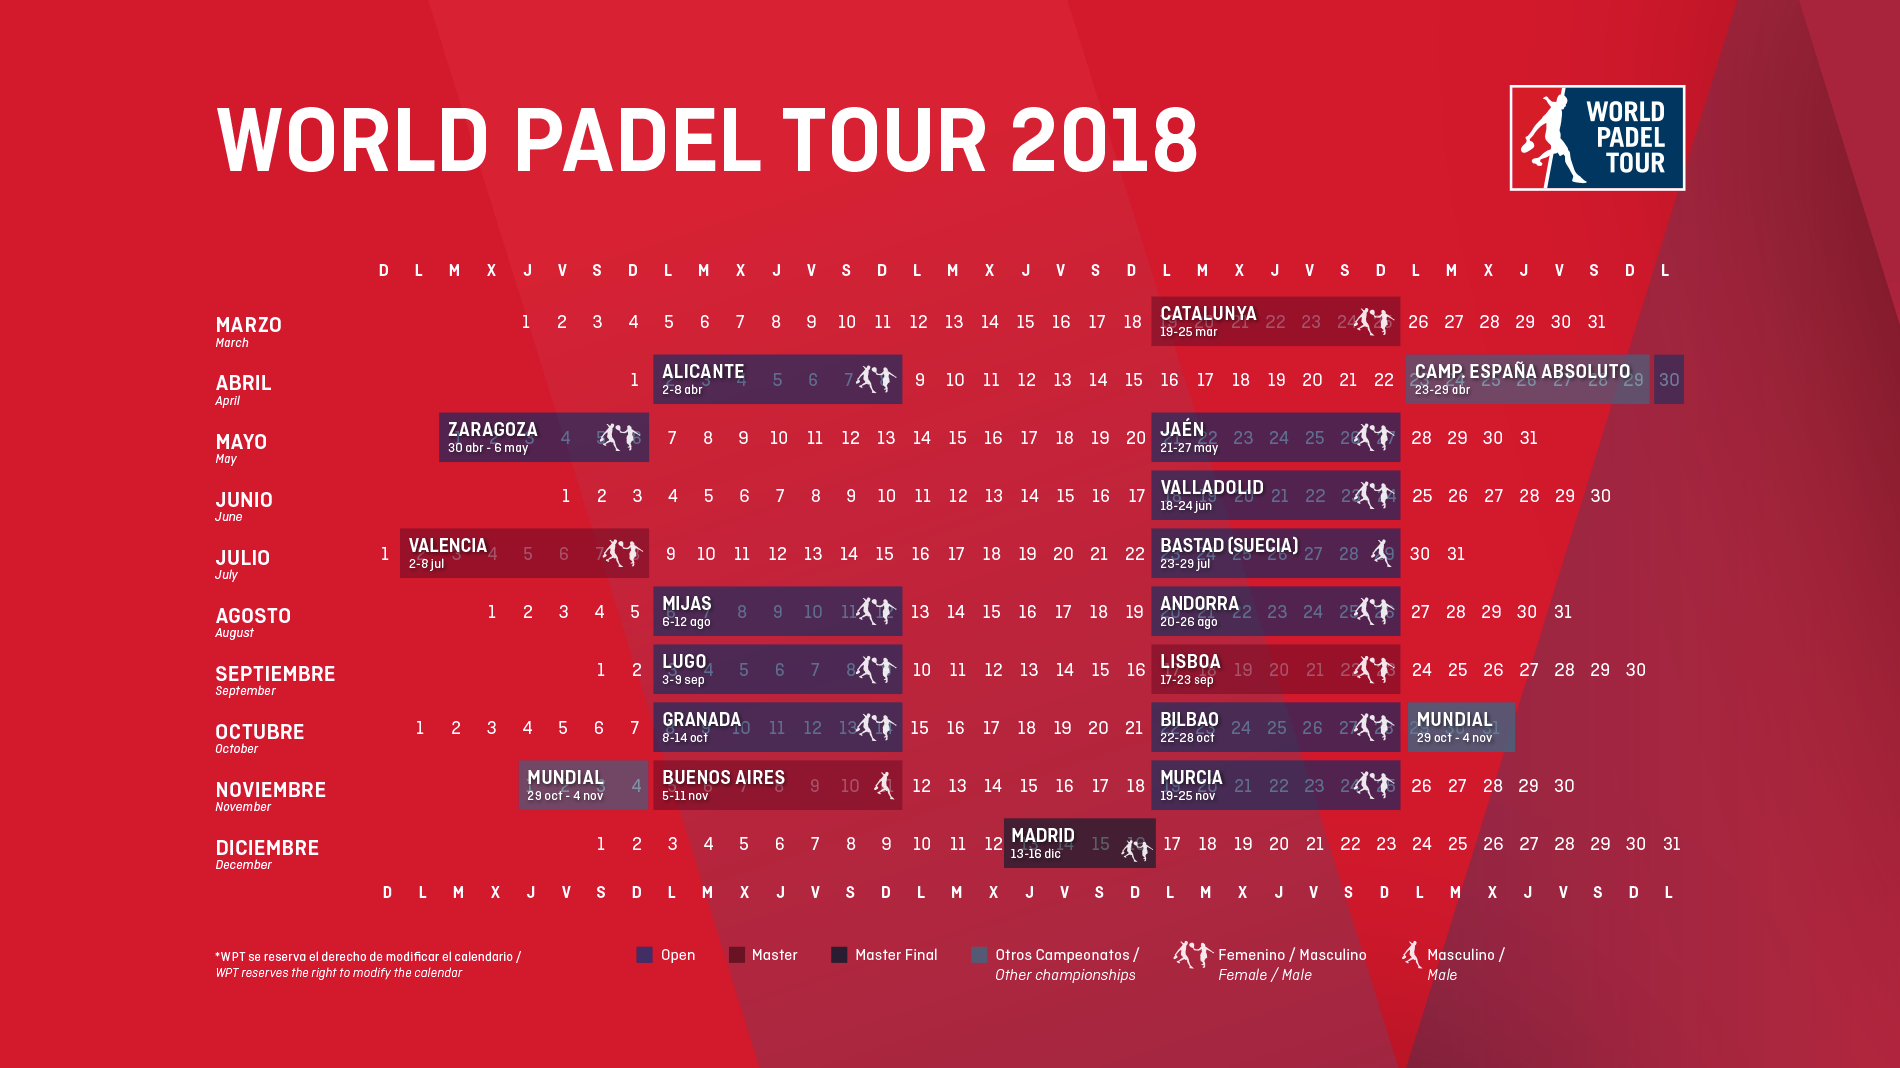 Eine zu hispanische Saison von World Padel Tour 2018?